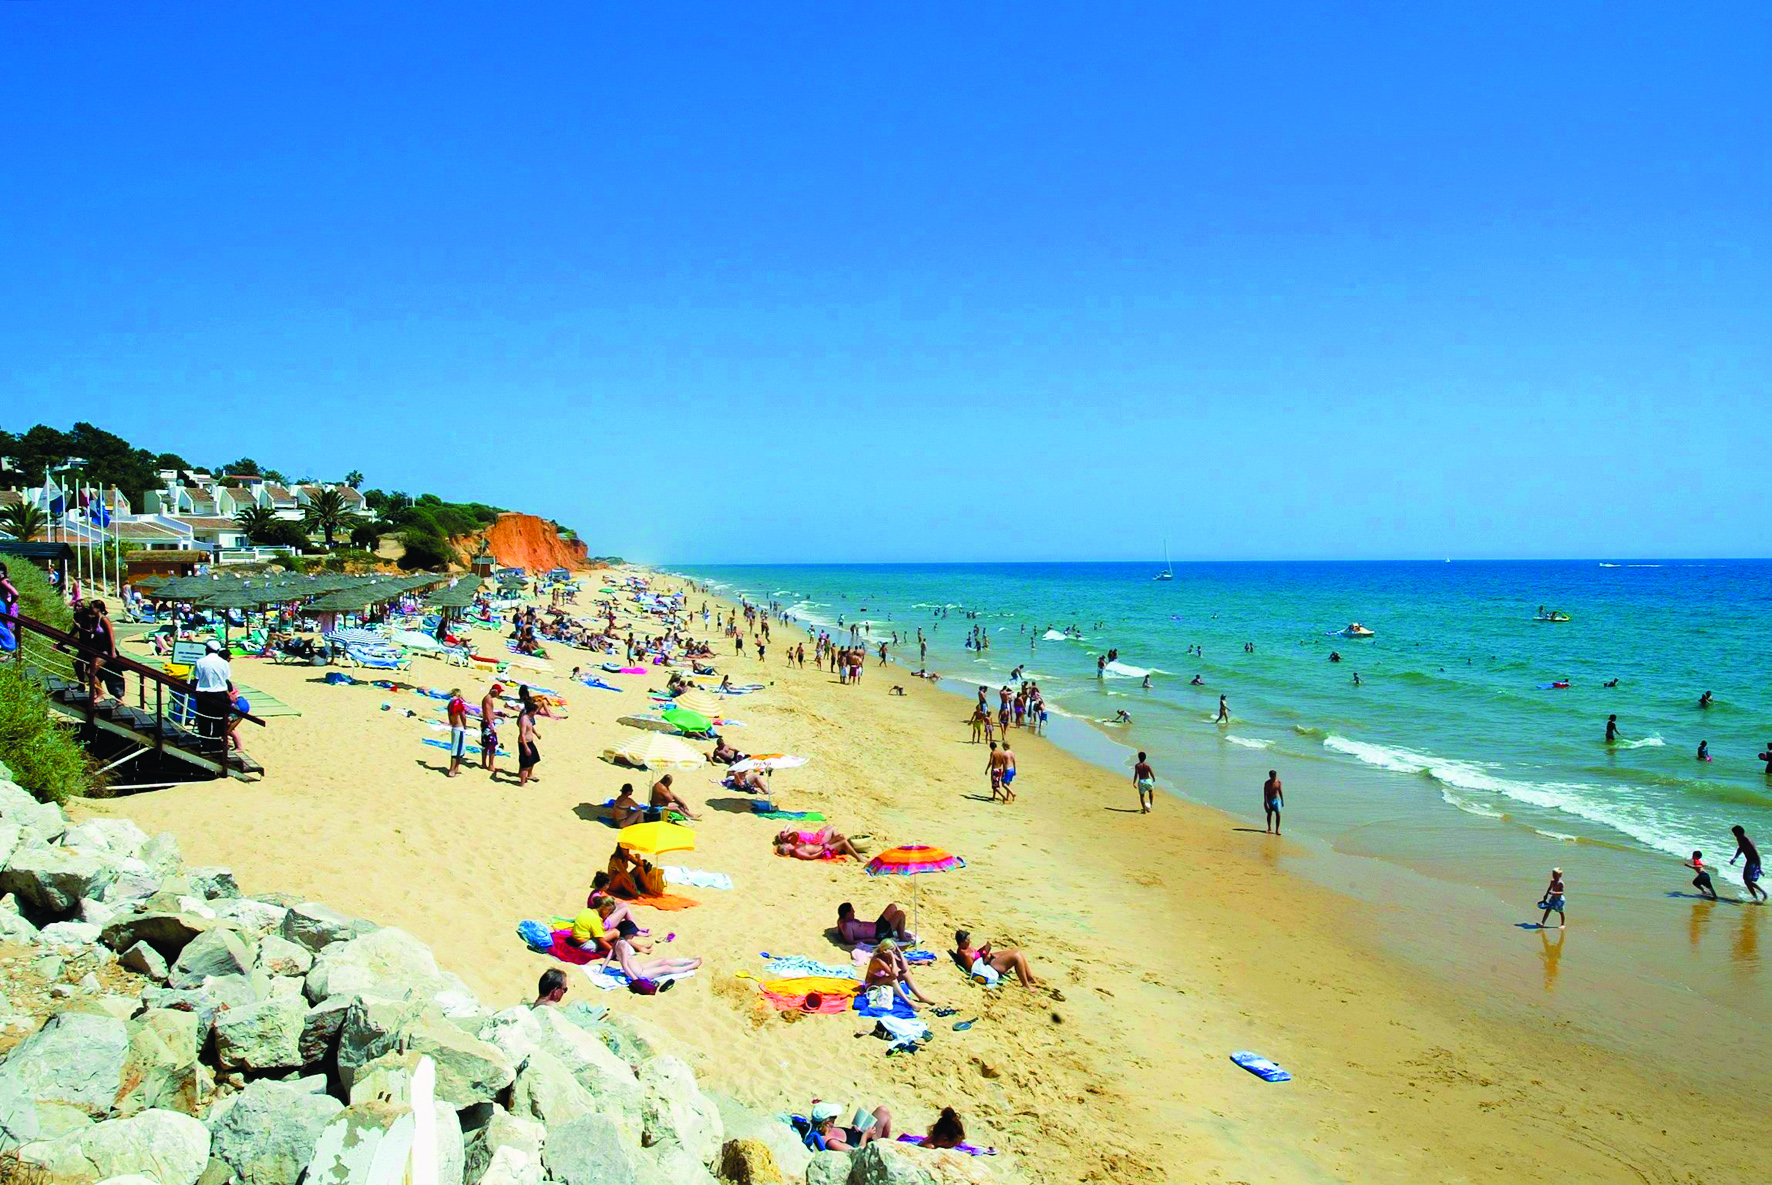 Autoridade Marítima recorda medidas de segurança nas praias em véspera de fim de semana de calor